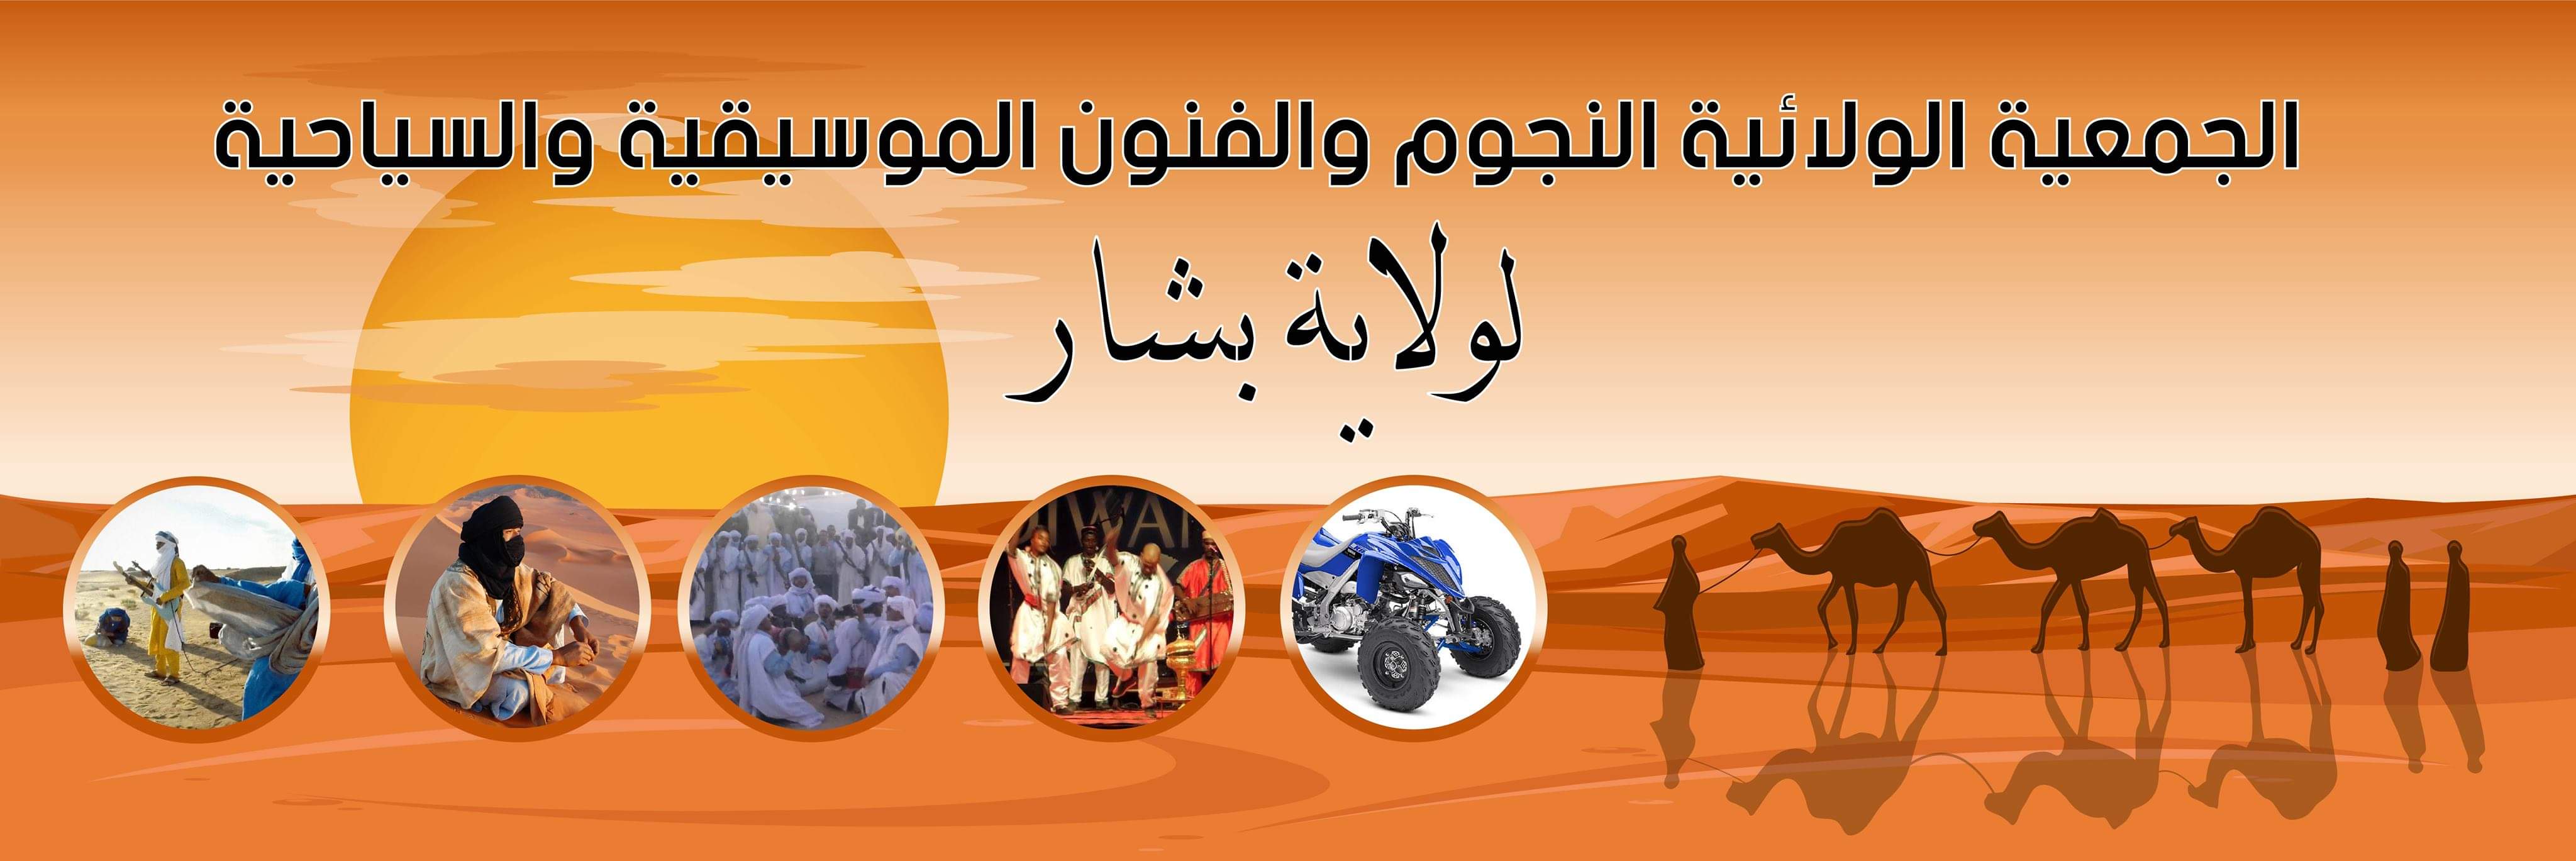 1الجمعية الولائية النجوم للفنون الموسيقية والسياحية ولاية بشار